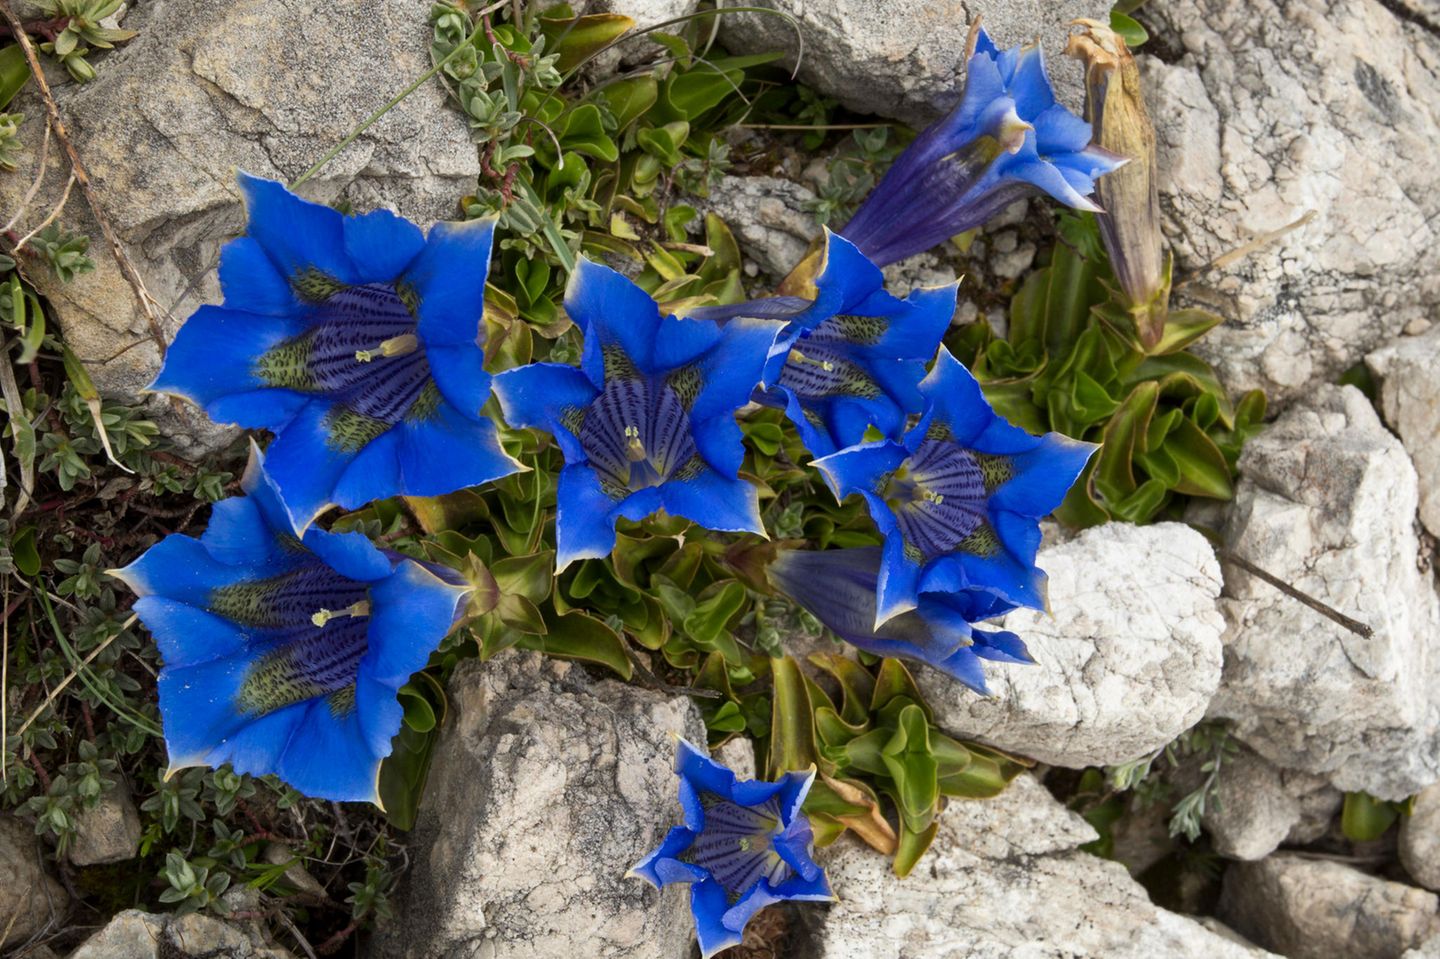 Blaue Alpenblüher wie dieser Ligurische Glocken-Enzian (Gentiana ligustica) haben besonders gute Chancen, von der Wissenschaft unter die Lupe genommen zu werden